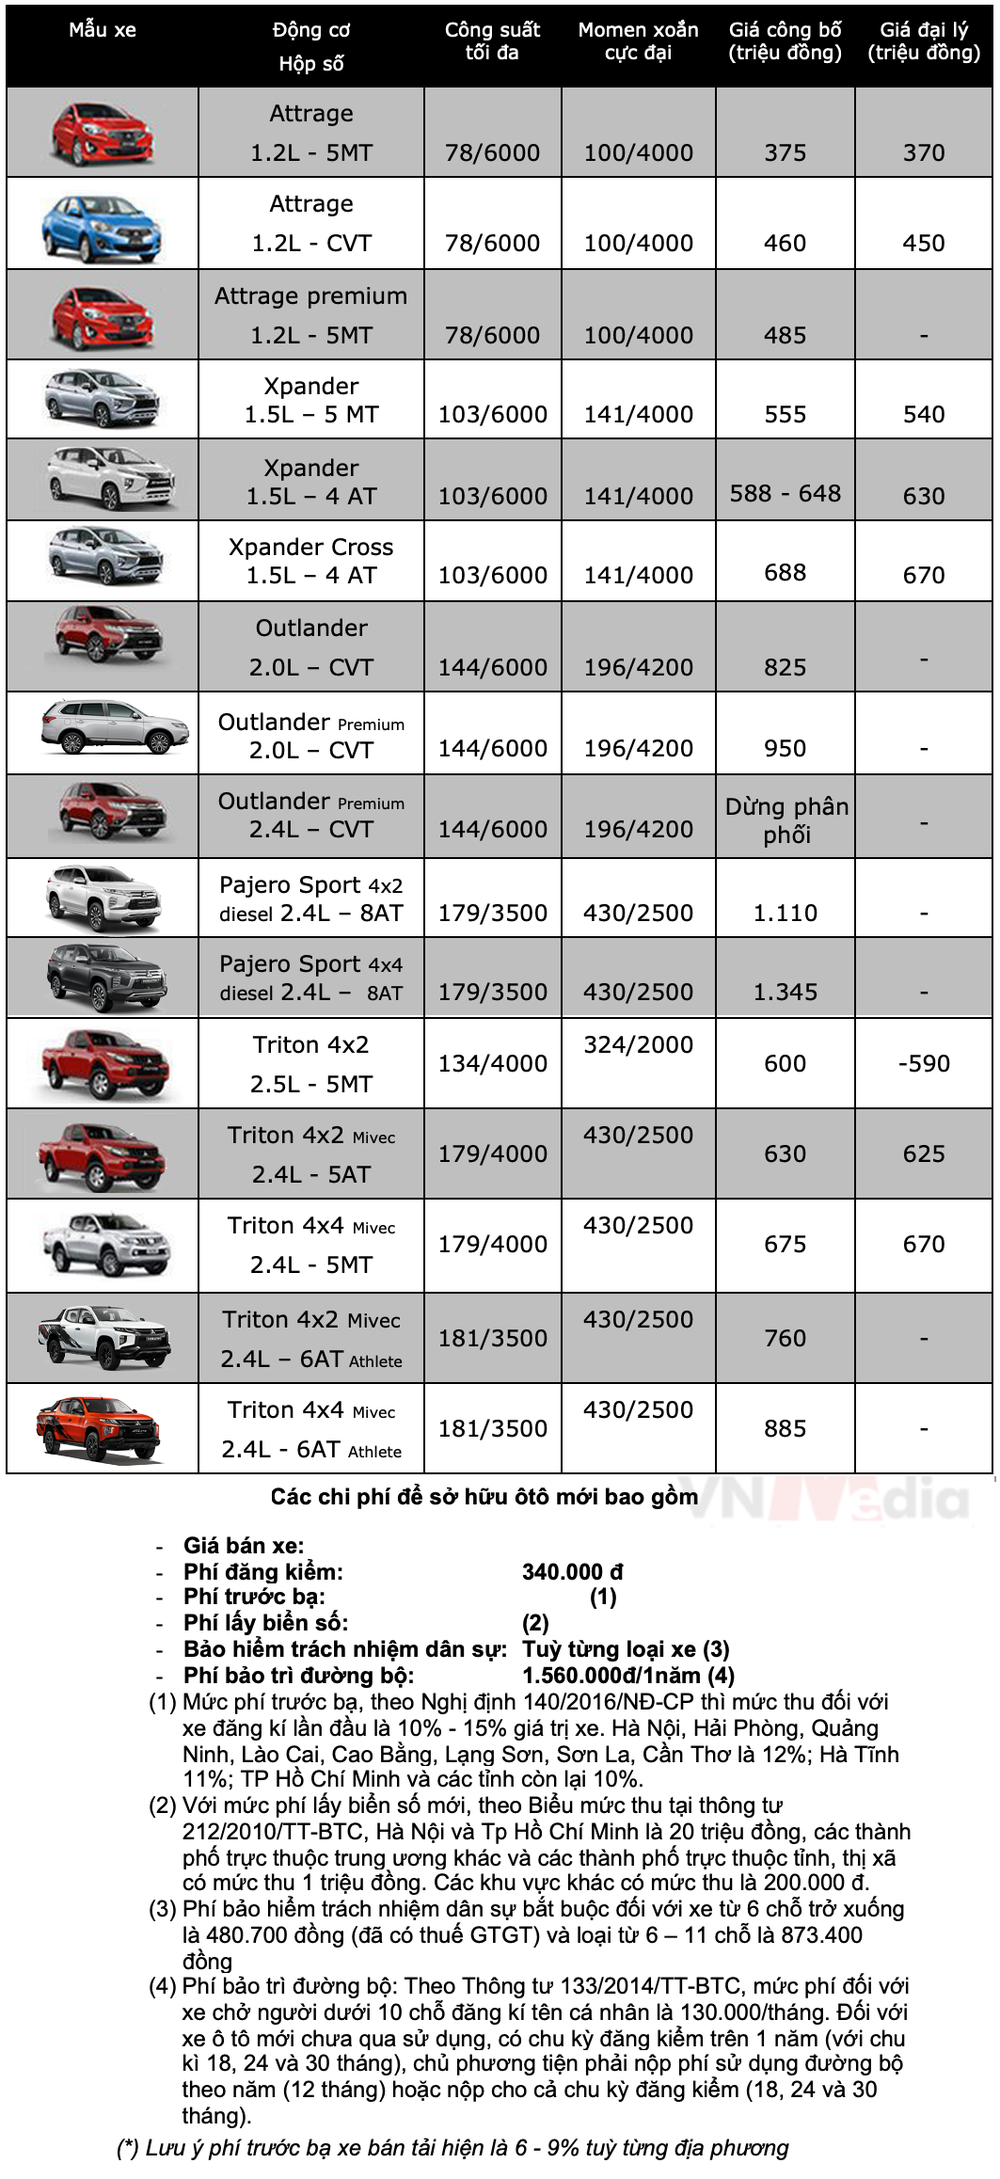 Bảng giá xe Mitsubishi tháng 5: Mitsubishi Attrage được ưu đãi gần 30 triệu đồng - Ảnh 2.